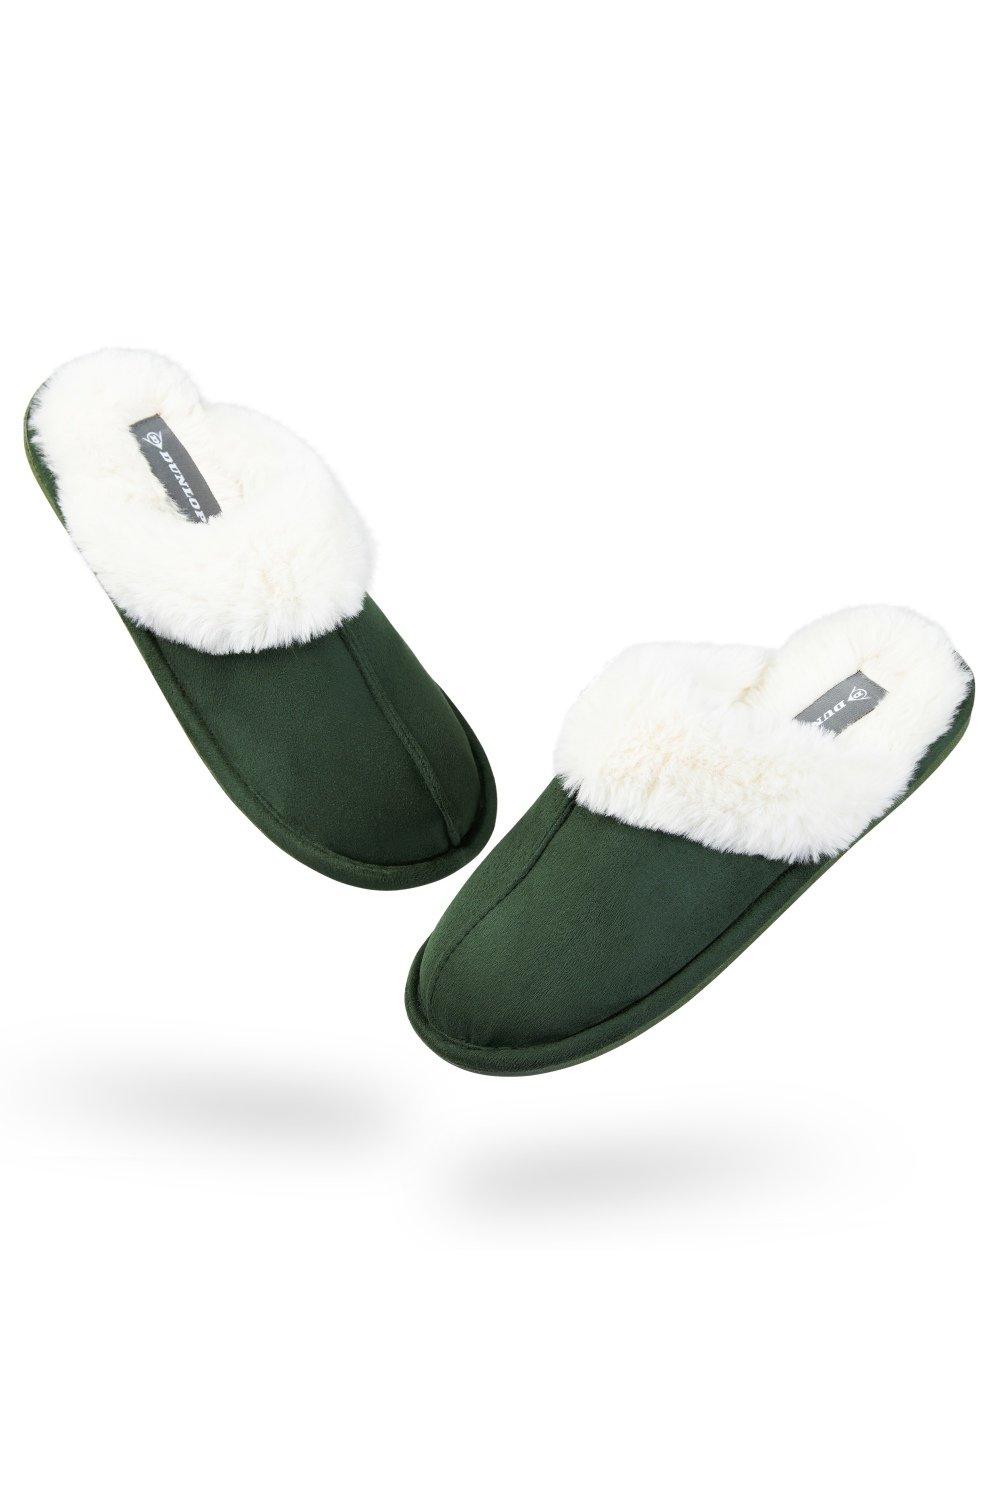 Домашние пушистые тапочки на толстой меховой подкладке Dunlop, зеленый slides women sandals fur slides for women flat slippers for women slipper women summer slipper slippers women slippers